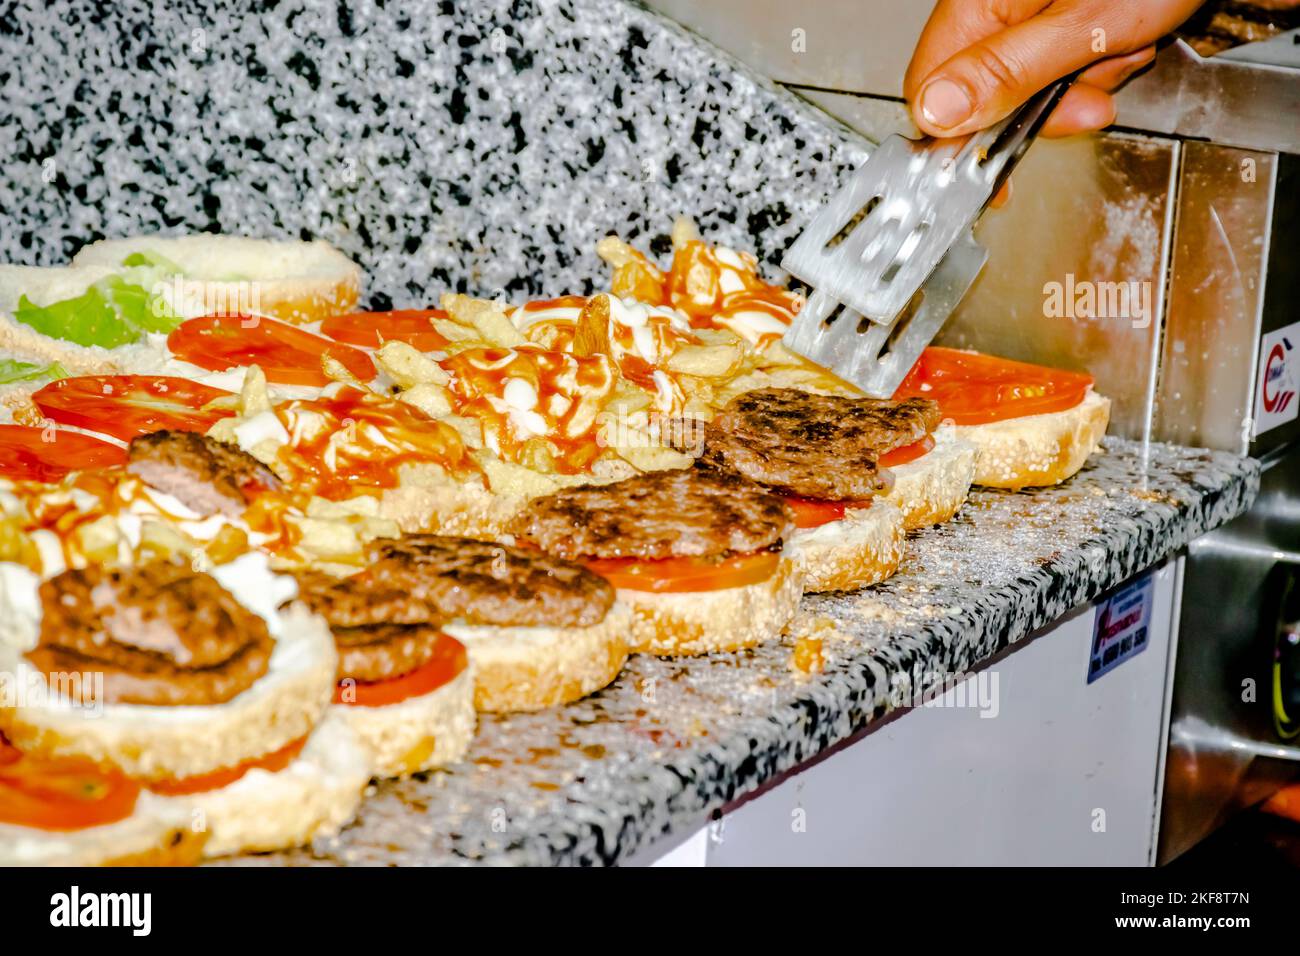 Concentrez-vous sur les mains, les tong et les hamburgers de la cuisinière remplis de frites, de laitue, de tomate, de steak grillé, de mayonnaise et de sauce ketchup. Banque D'Images